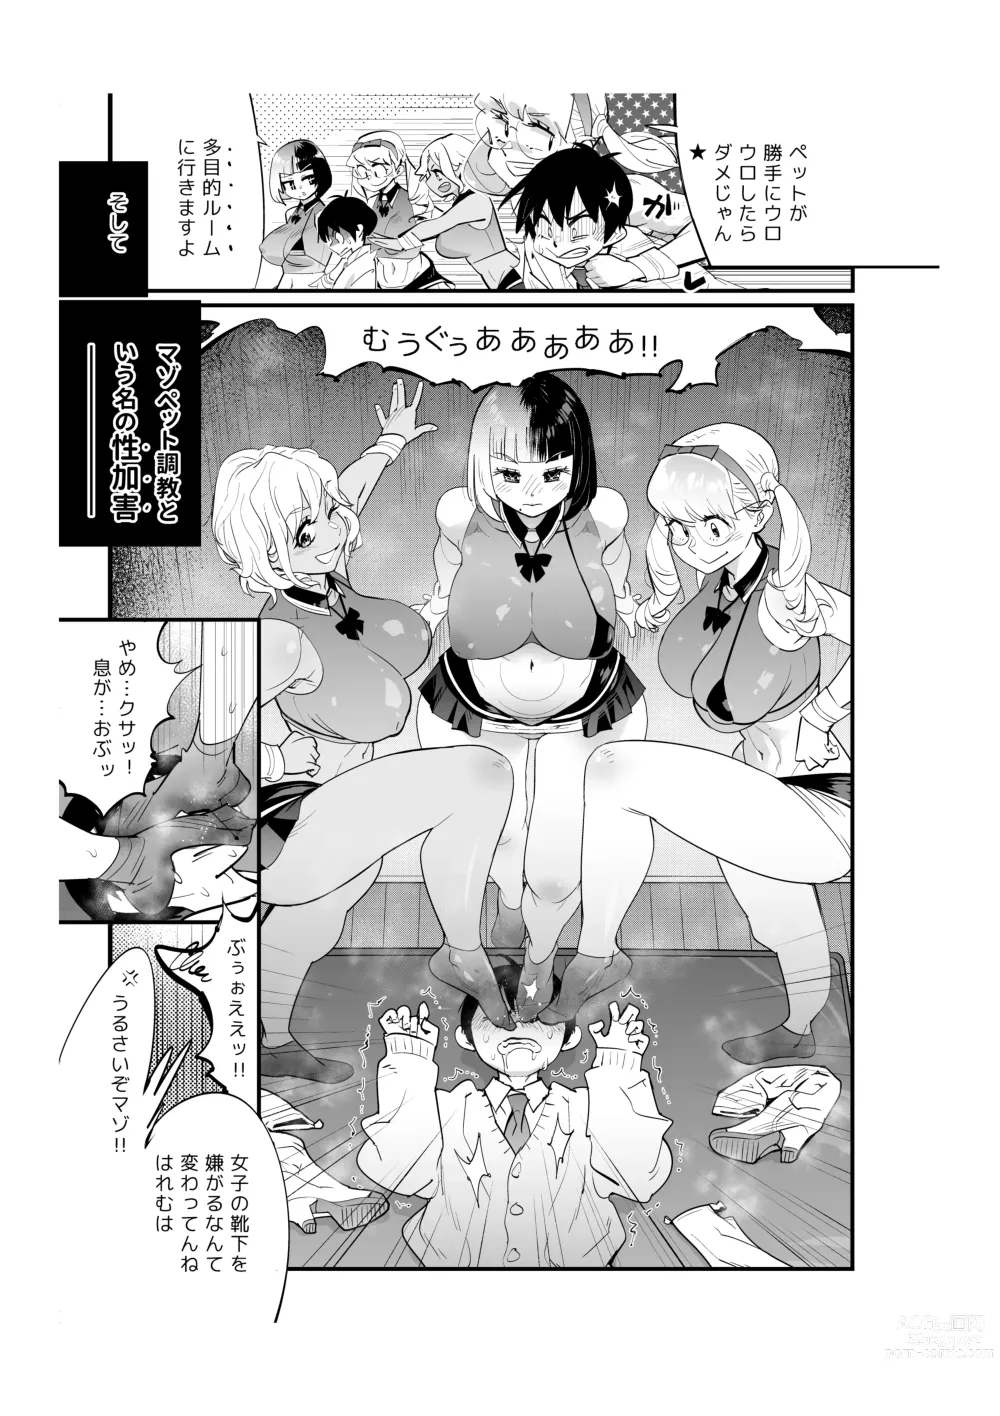 Page 9 of manga Unhygenic Lez Academy